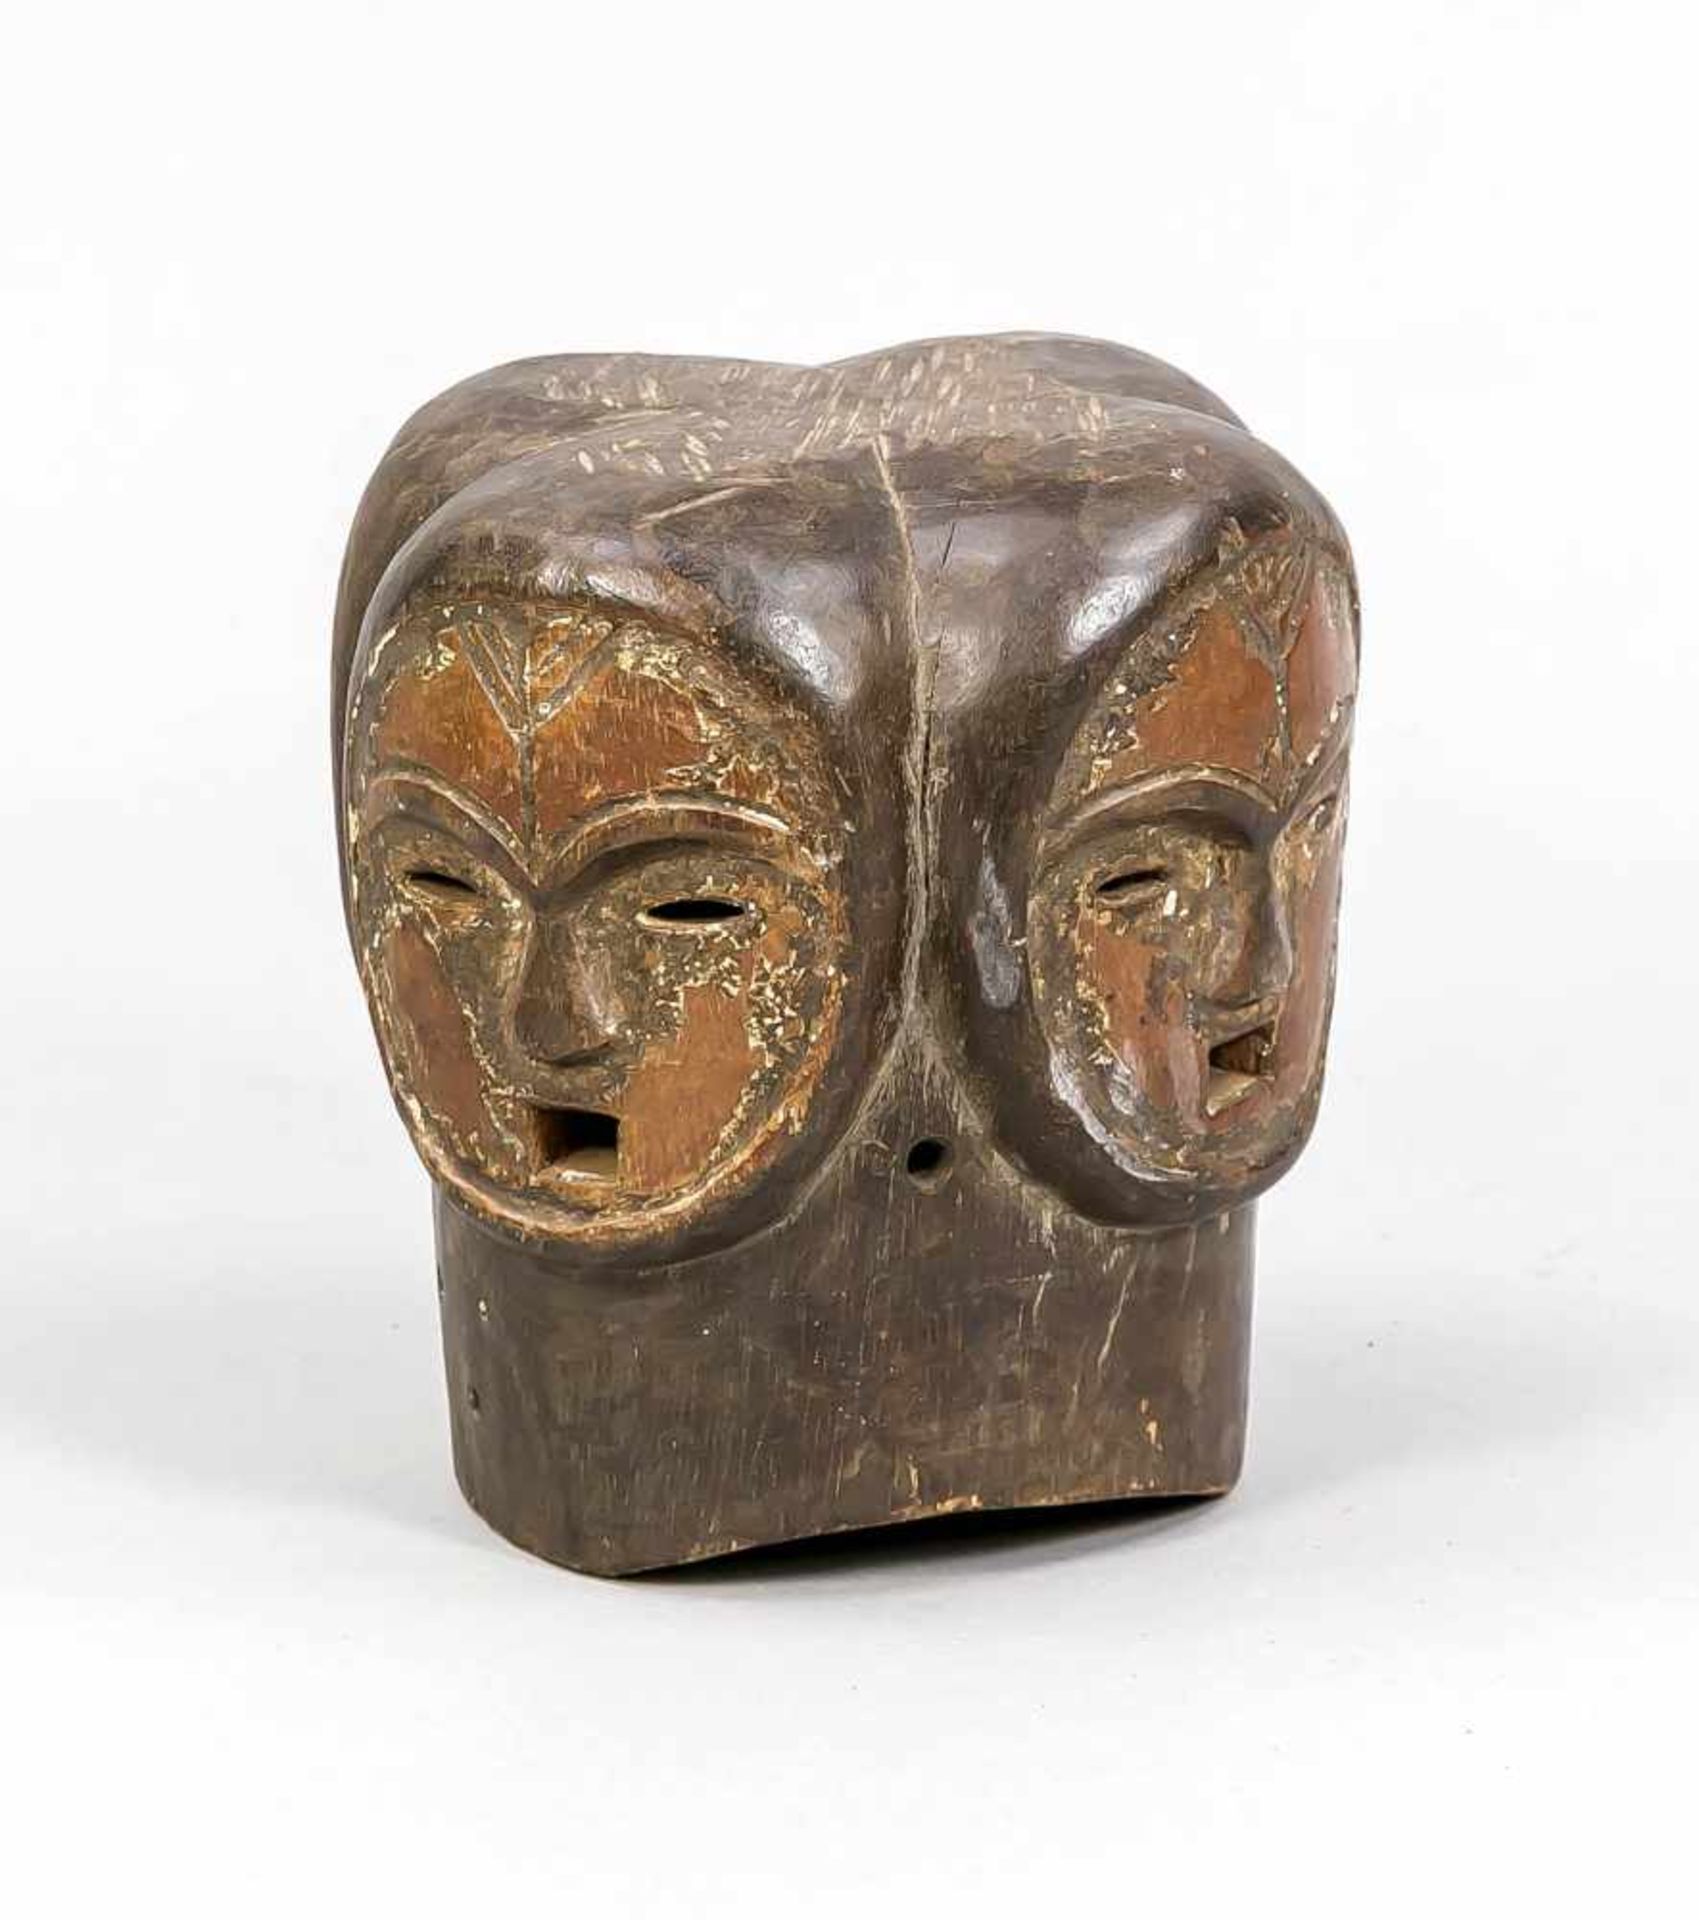 Helmmaske, Fang? Westafrika. Holz vierpassig beschnitzt mit 4 Gesichtern. Augen und Münderals